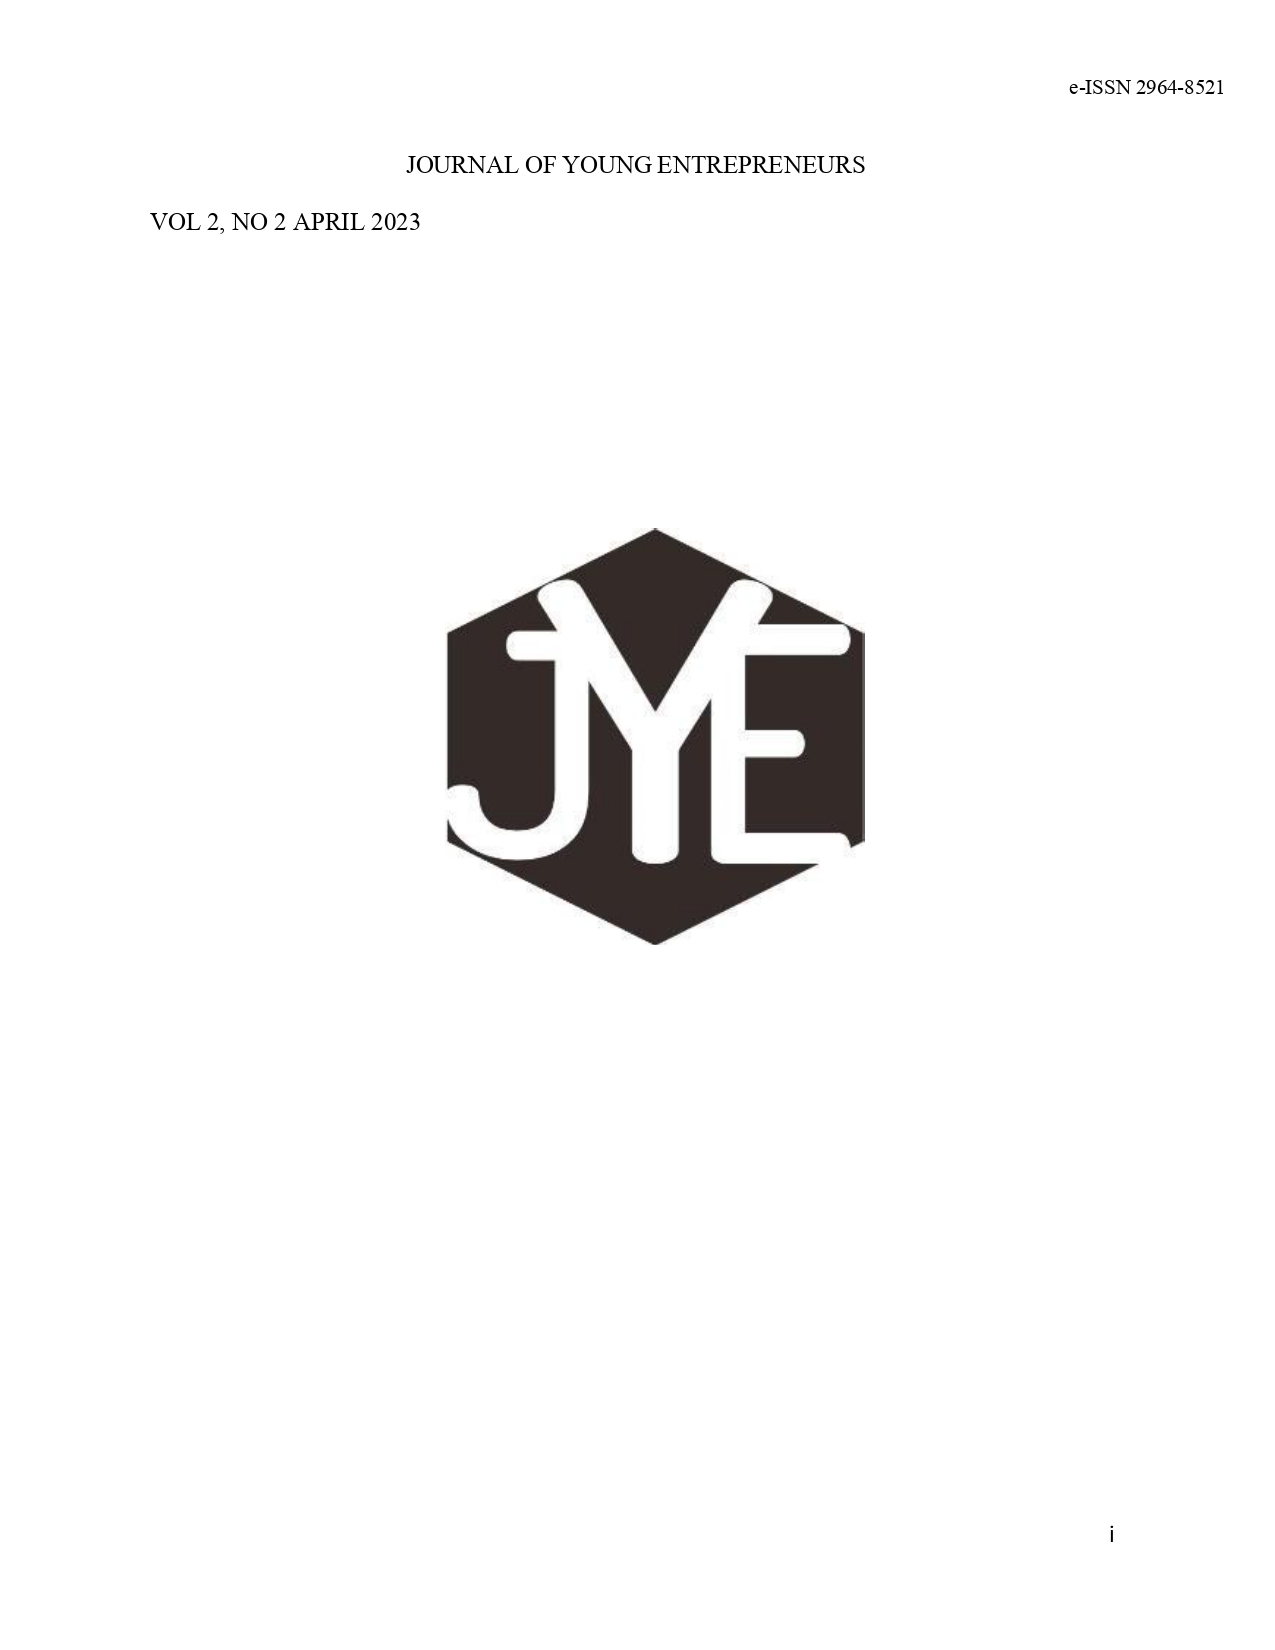 					Lihat Vol 2 No 2 (2023): Journal of Young Entrepreneurs Vol 2 No 2 April 2023
				